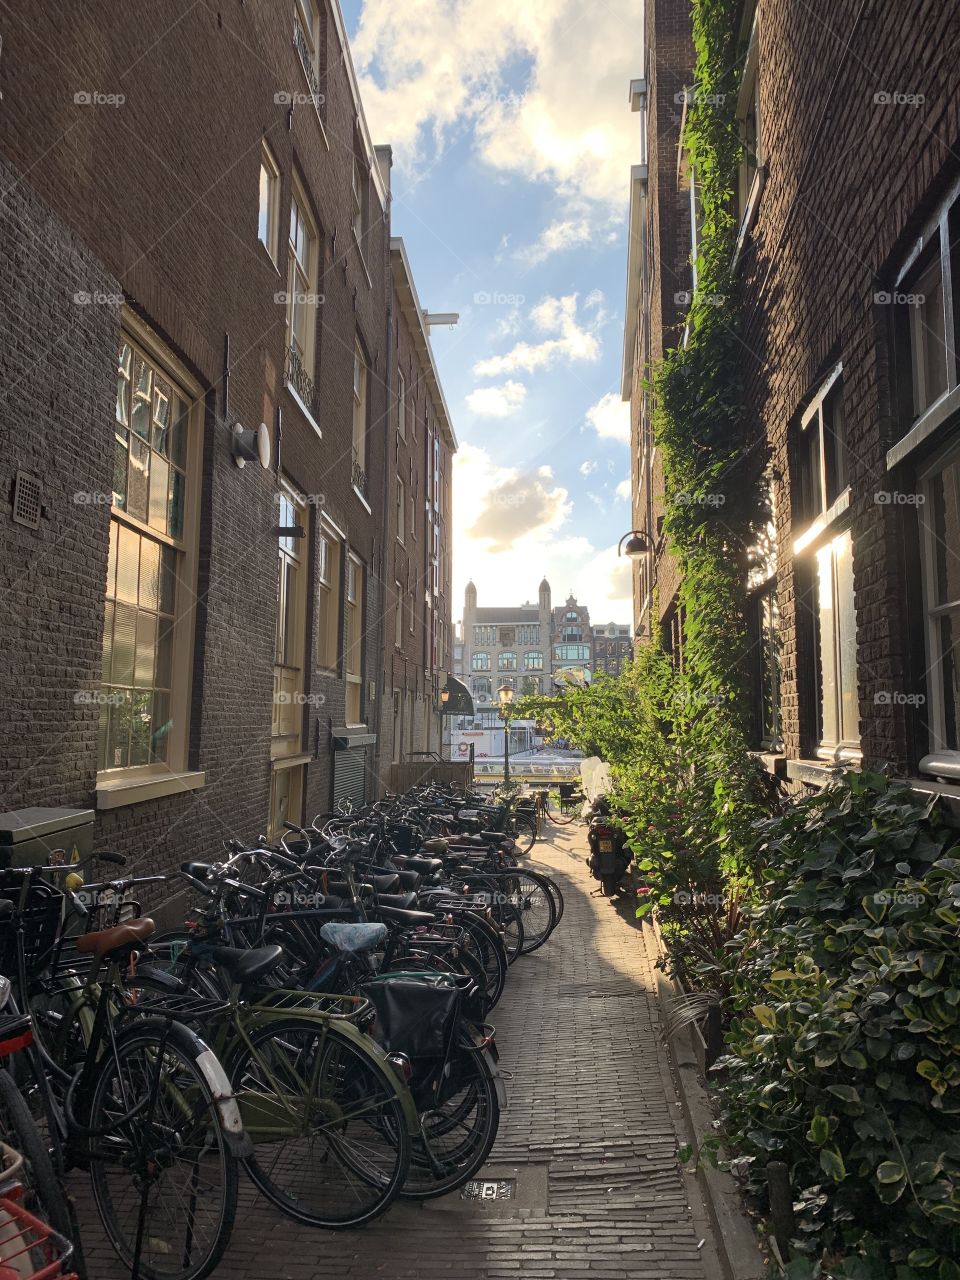 Amsterdam Bikes and Sunset 